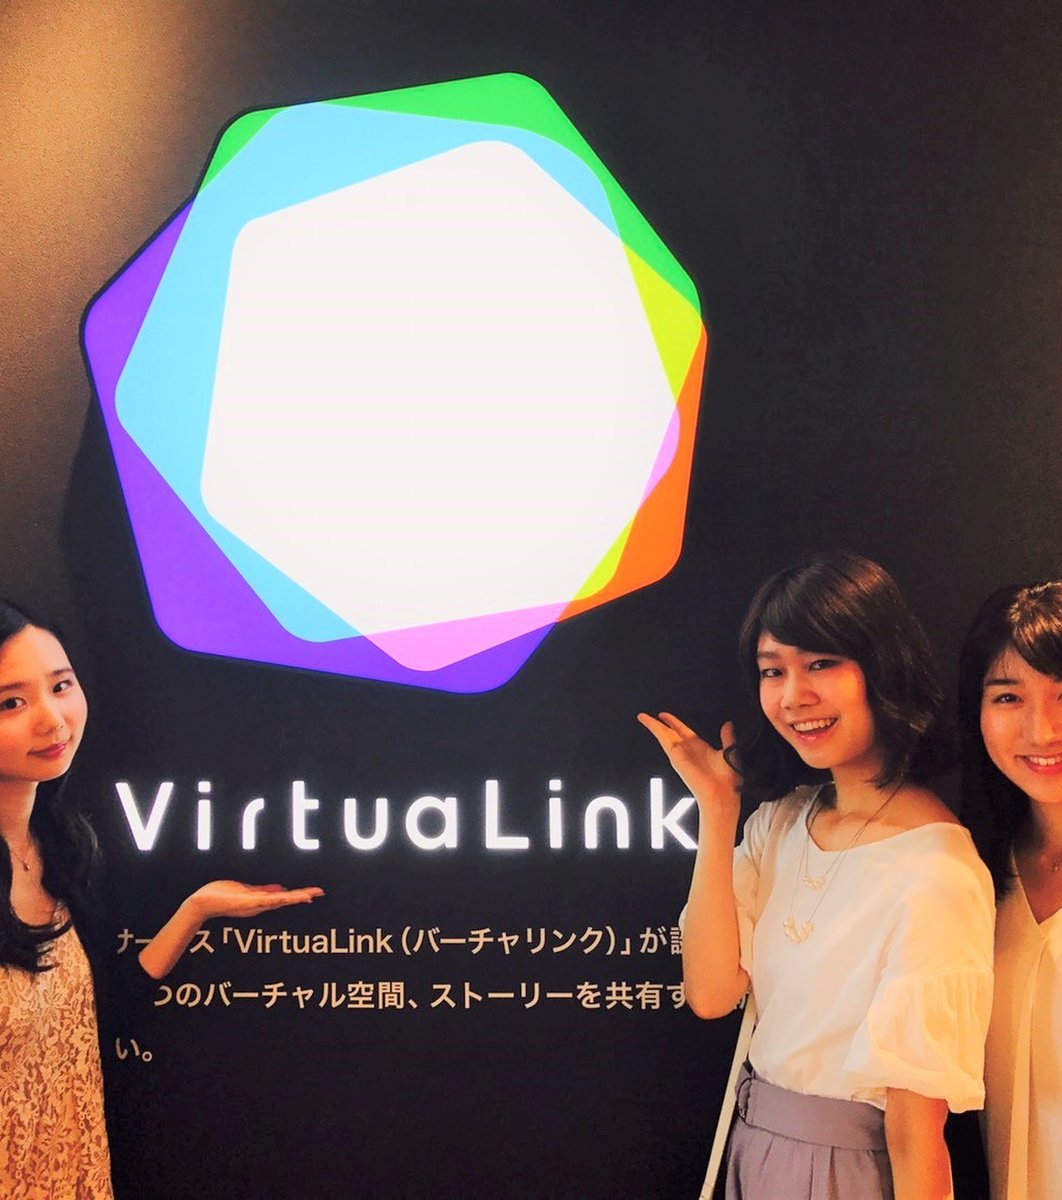 【閉館】VirtuaLink in ダイバーシティ東京 プラザ